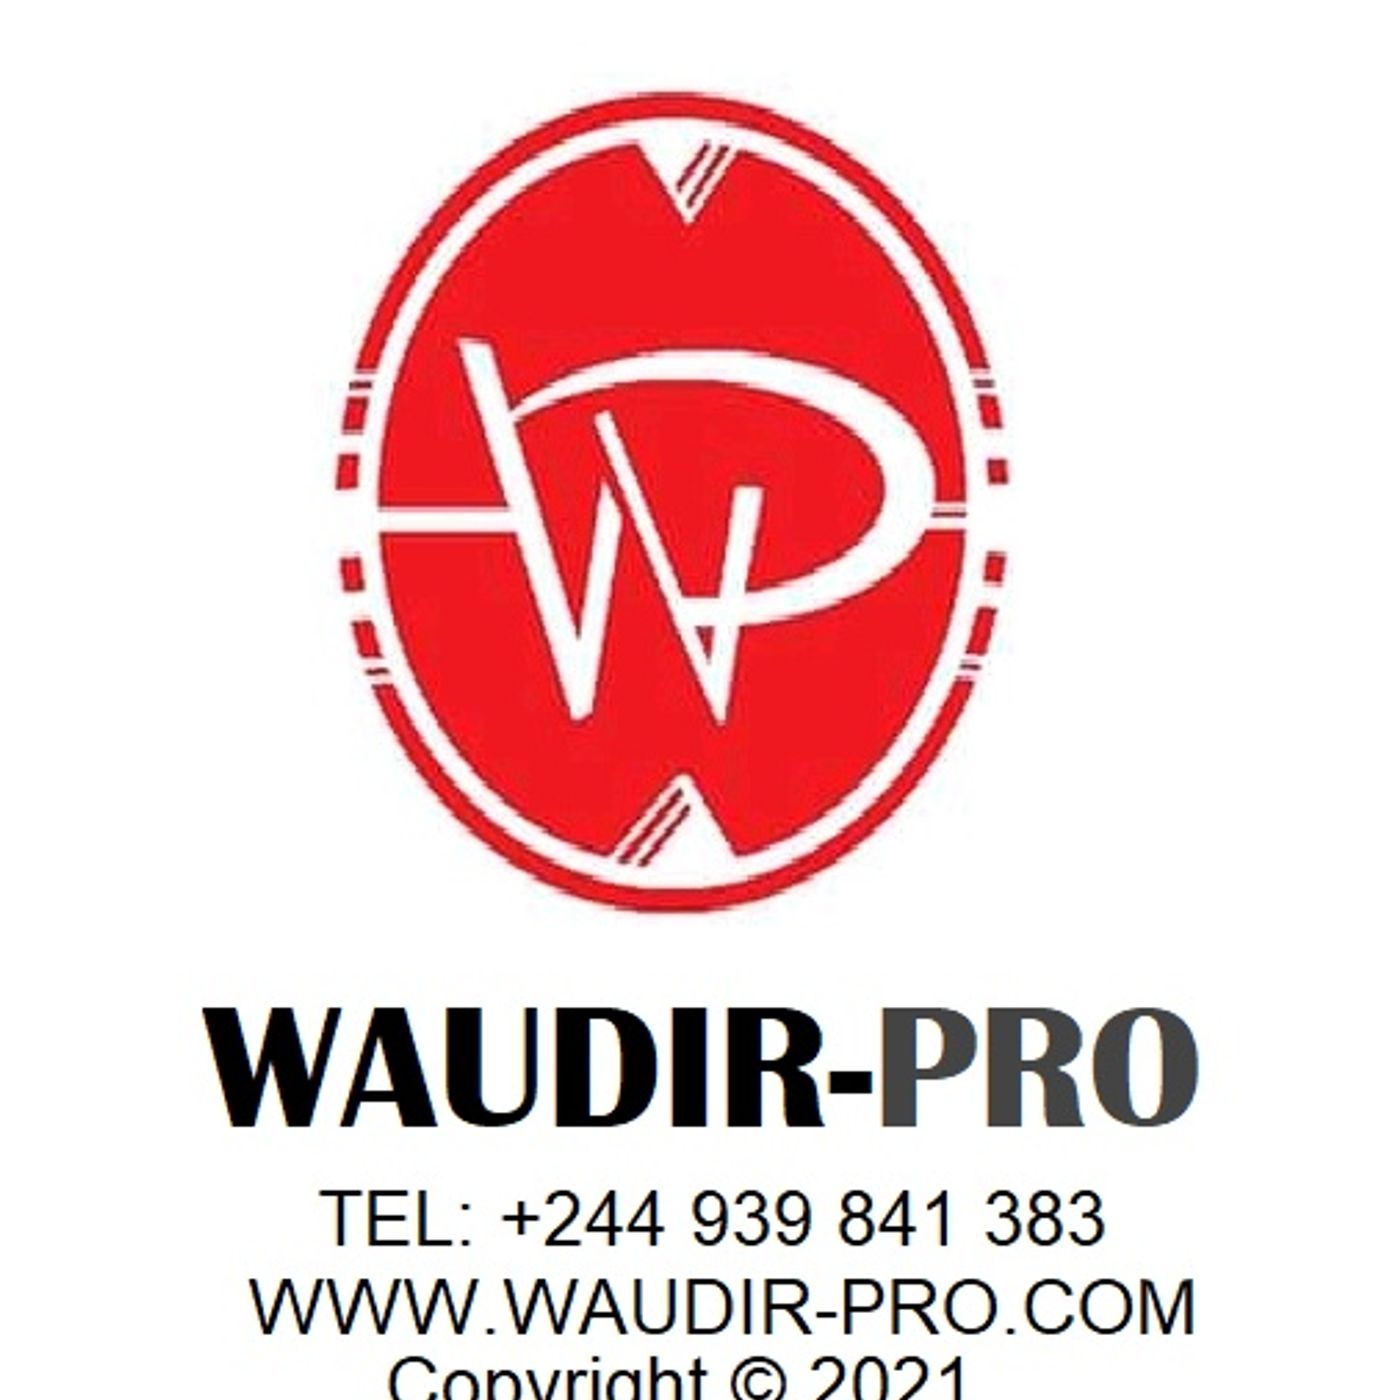 WAUDIR-PRO